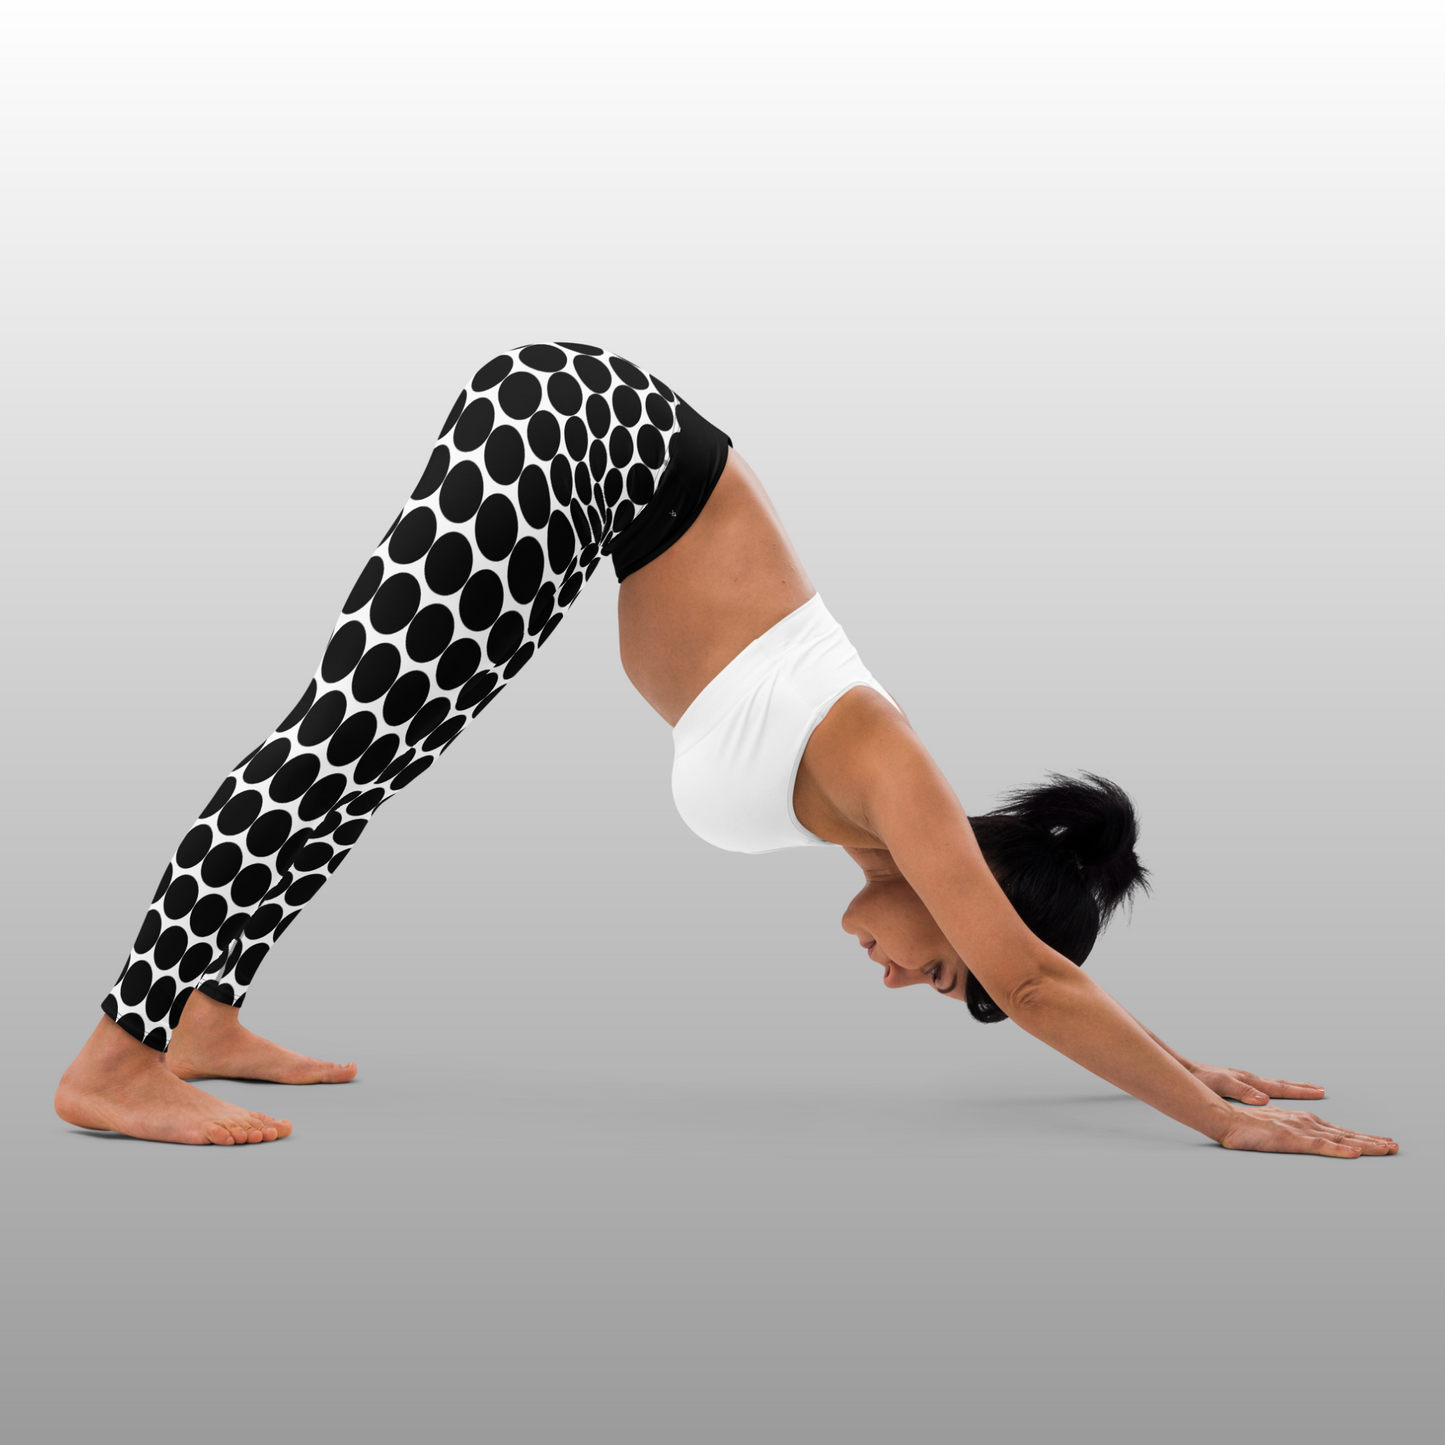 Legging de yoga femme - Pois